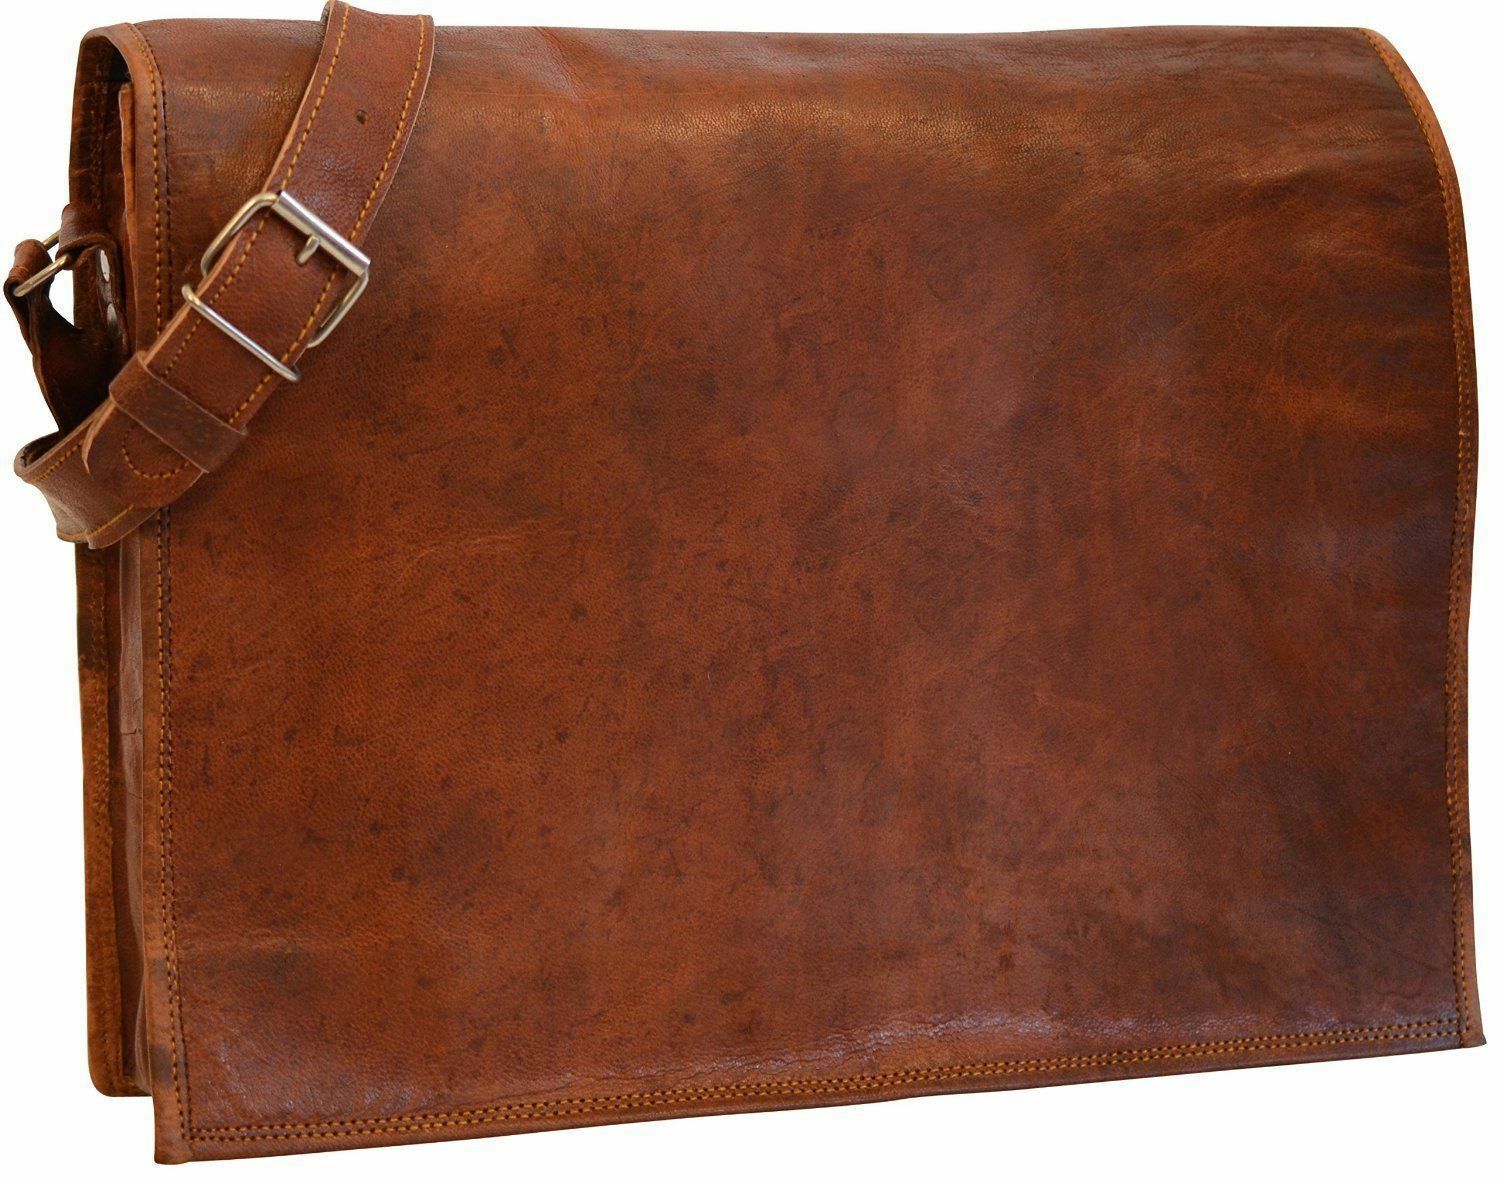 Goat Leather Shoulder Bag | Premium Handmade Leather Bag